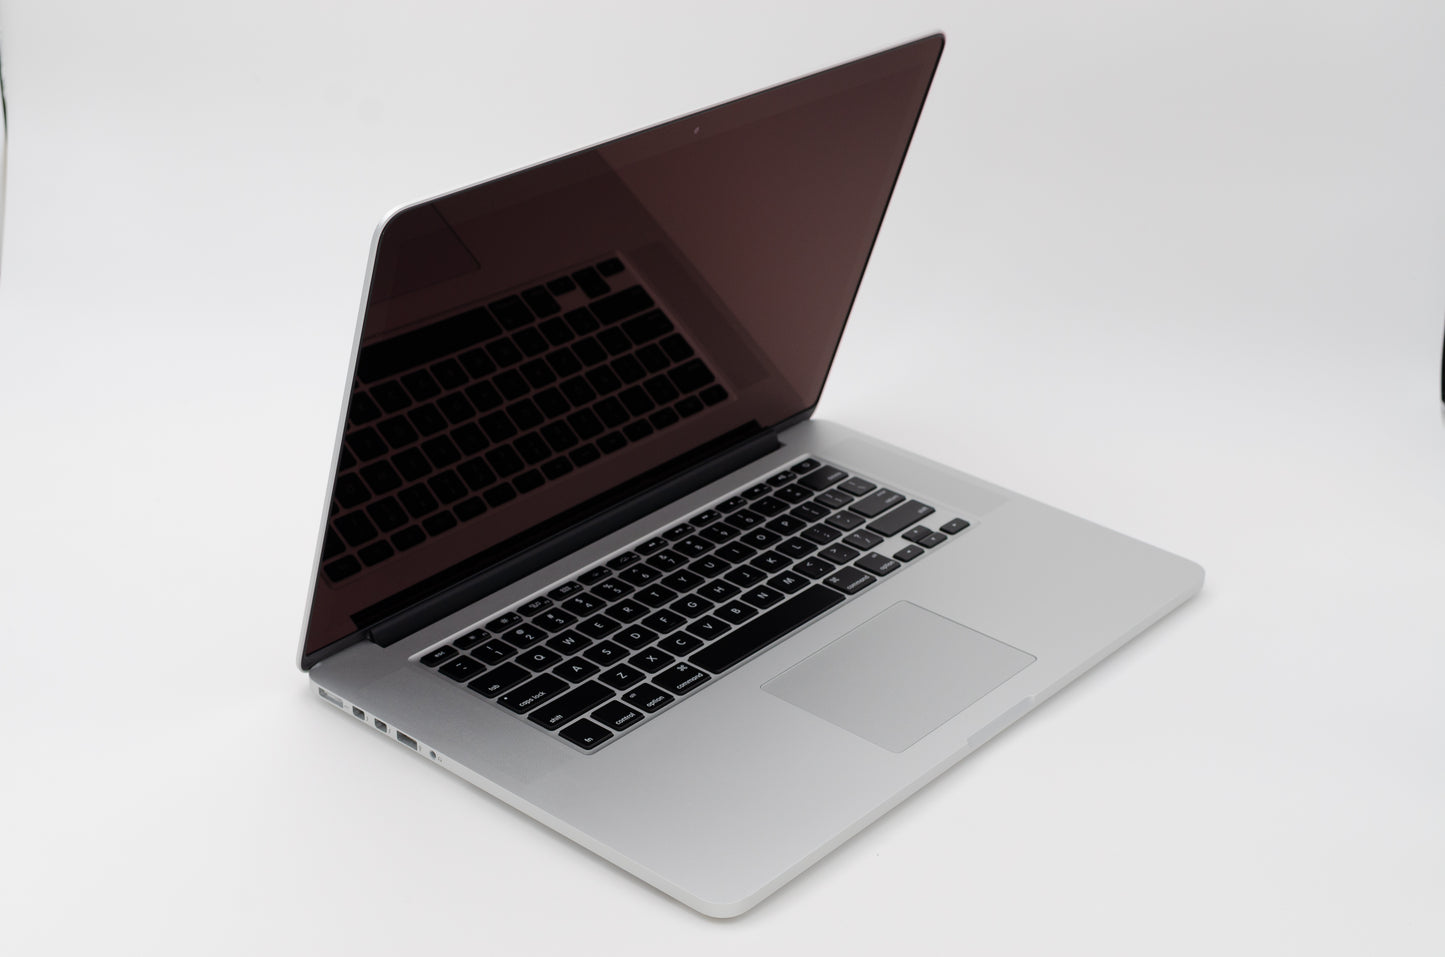 apple-mid-2012-15.4-inch-macbook-pro-a1286-aluminum-qci7 - 2.3ghz processor, 4gb ram, gt 650m - 1gb gpu-md103ll/a-4